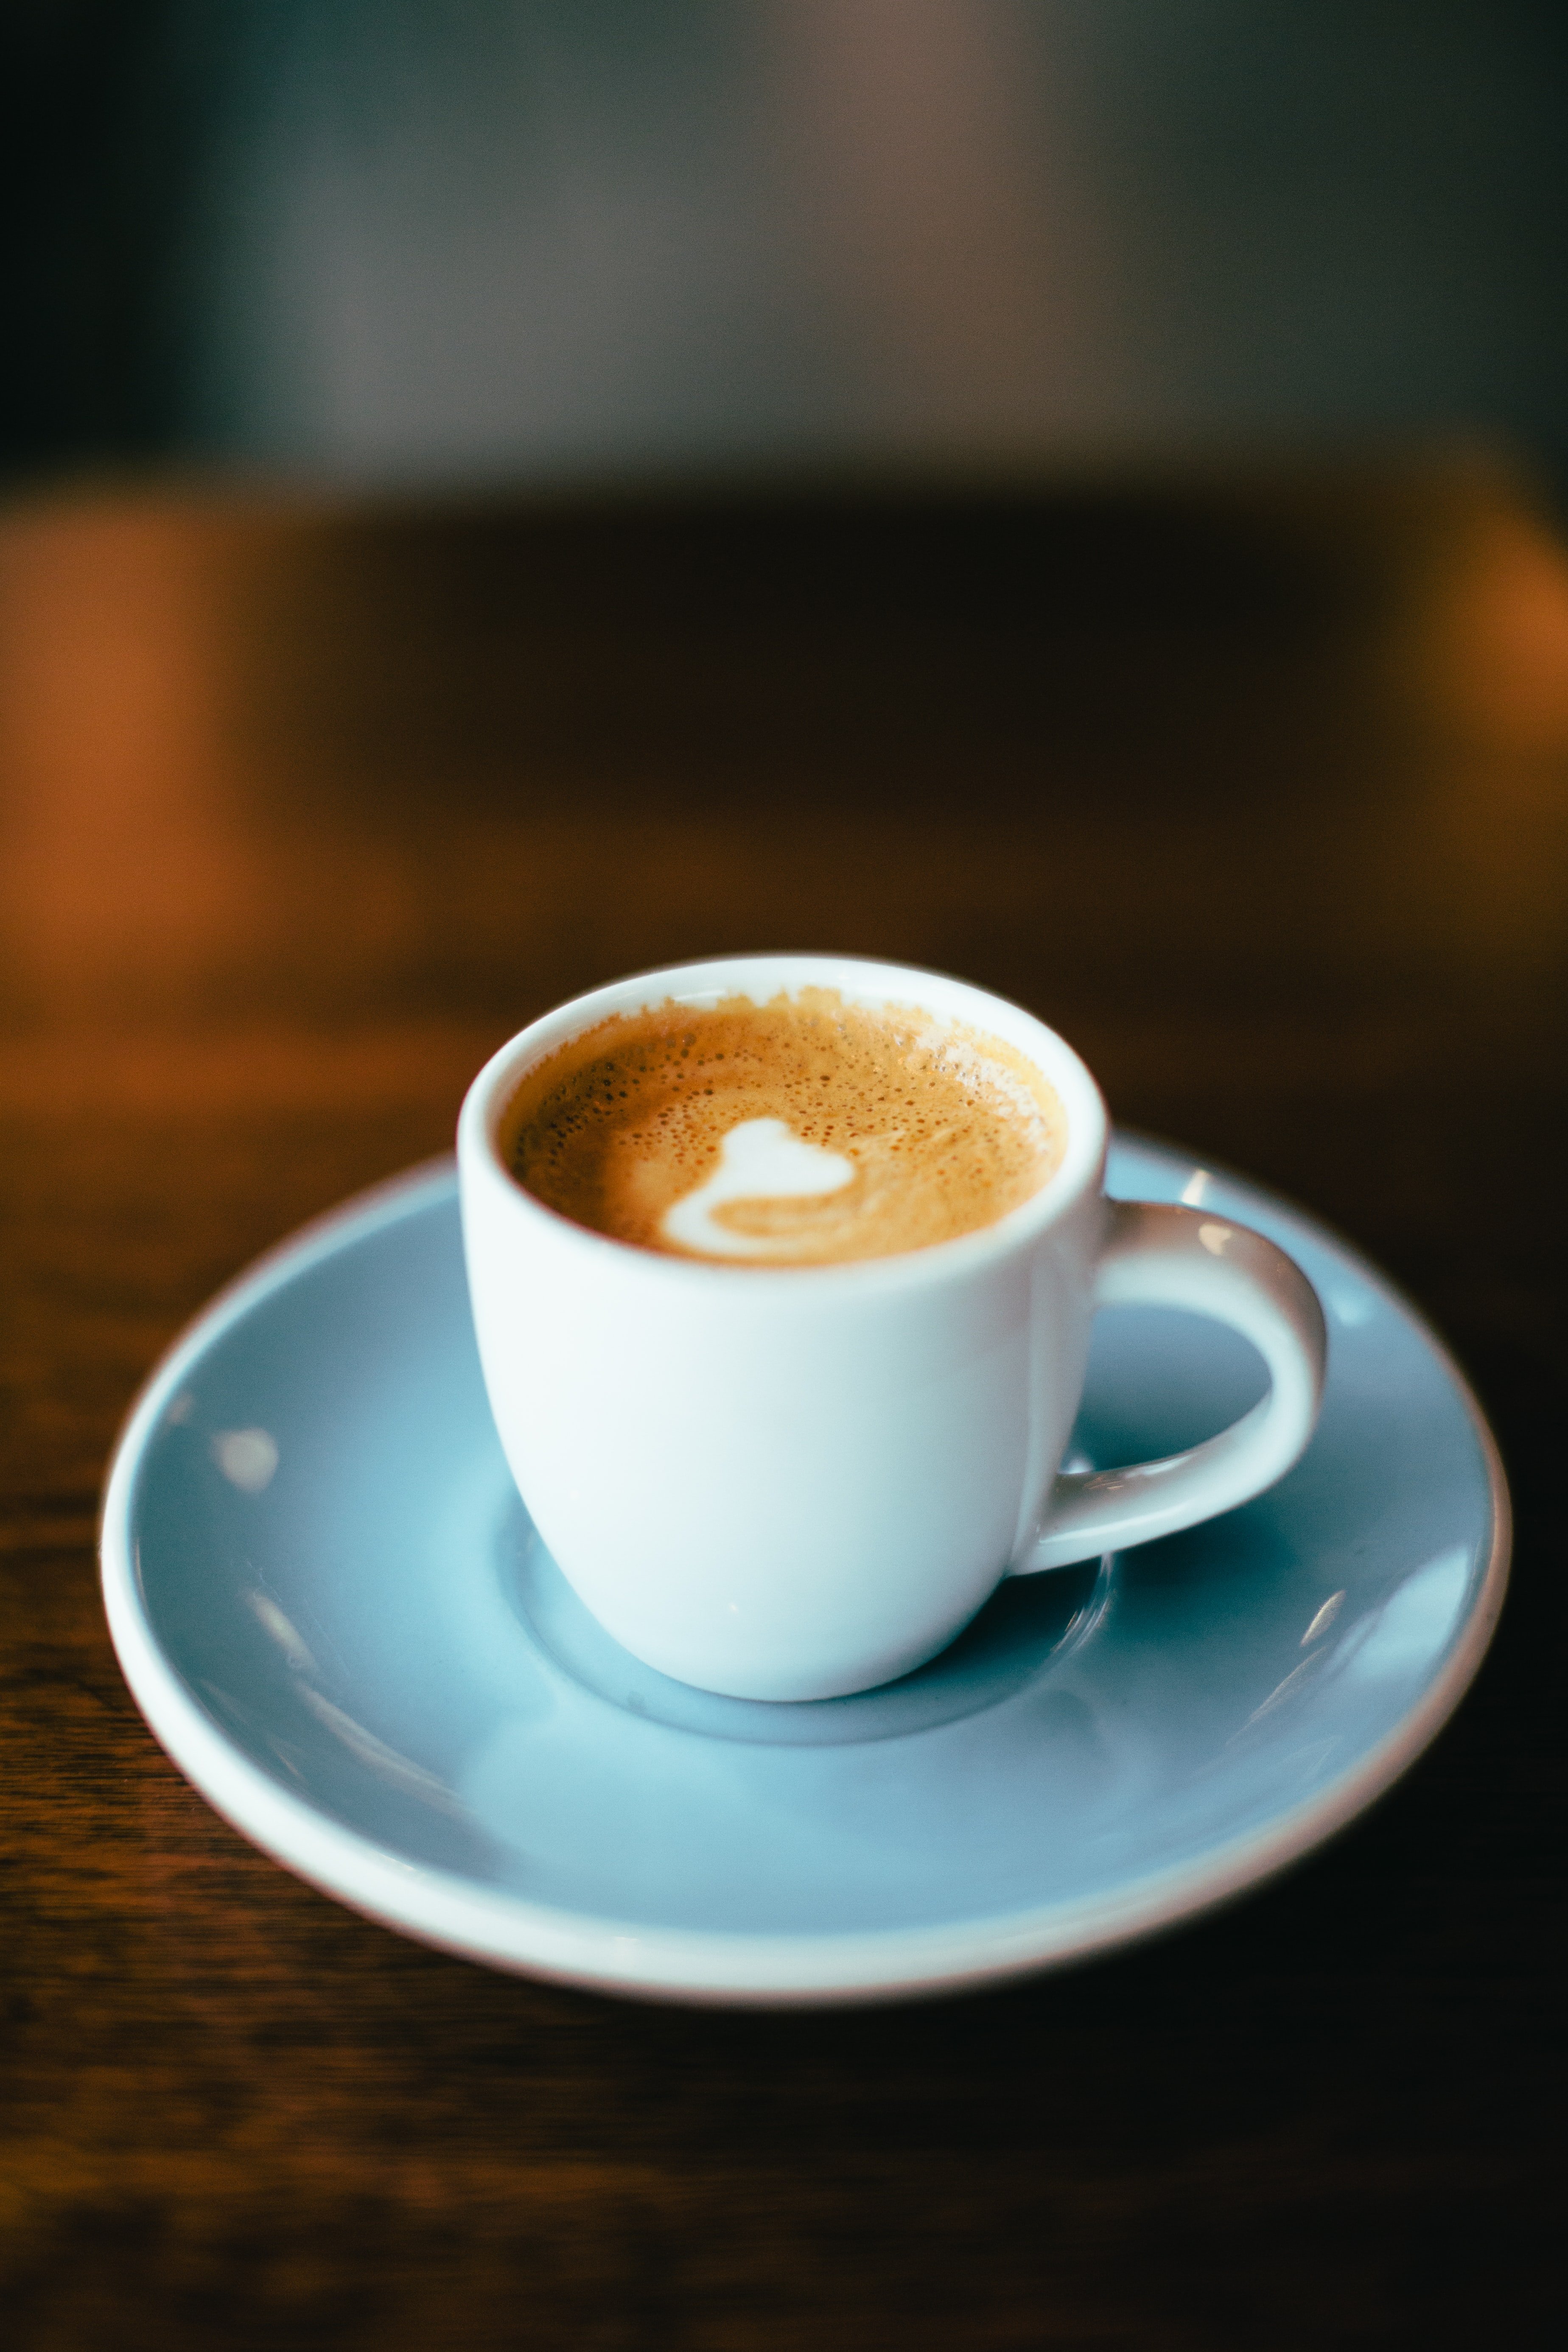 La cafetera retro de Aldi: vuelve el sabor y el olor a café de antes